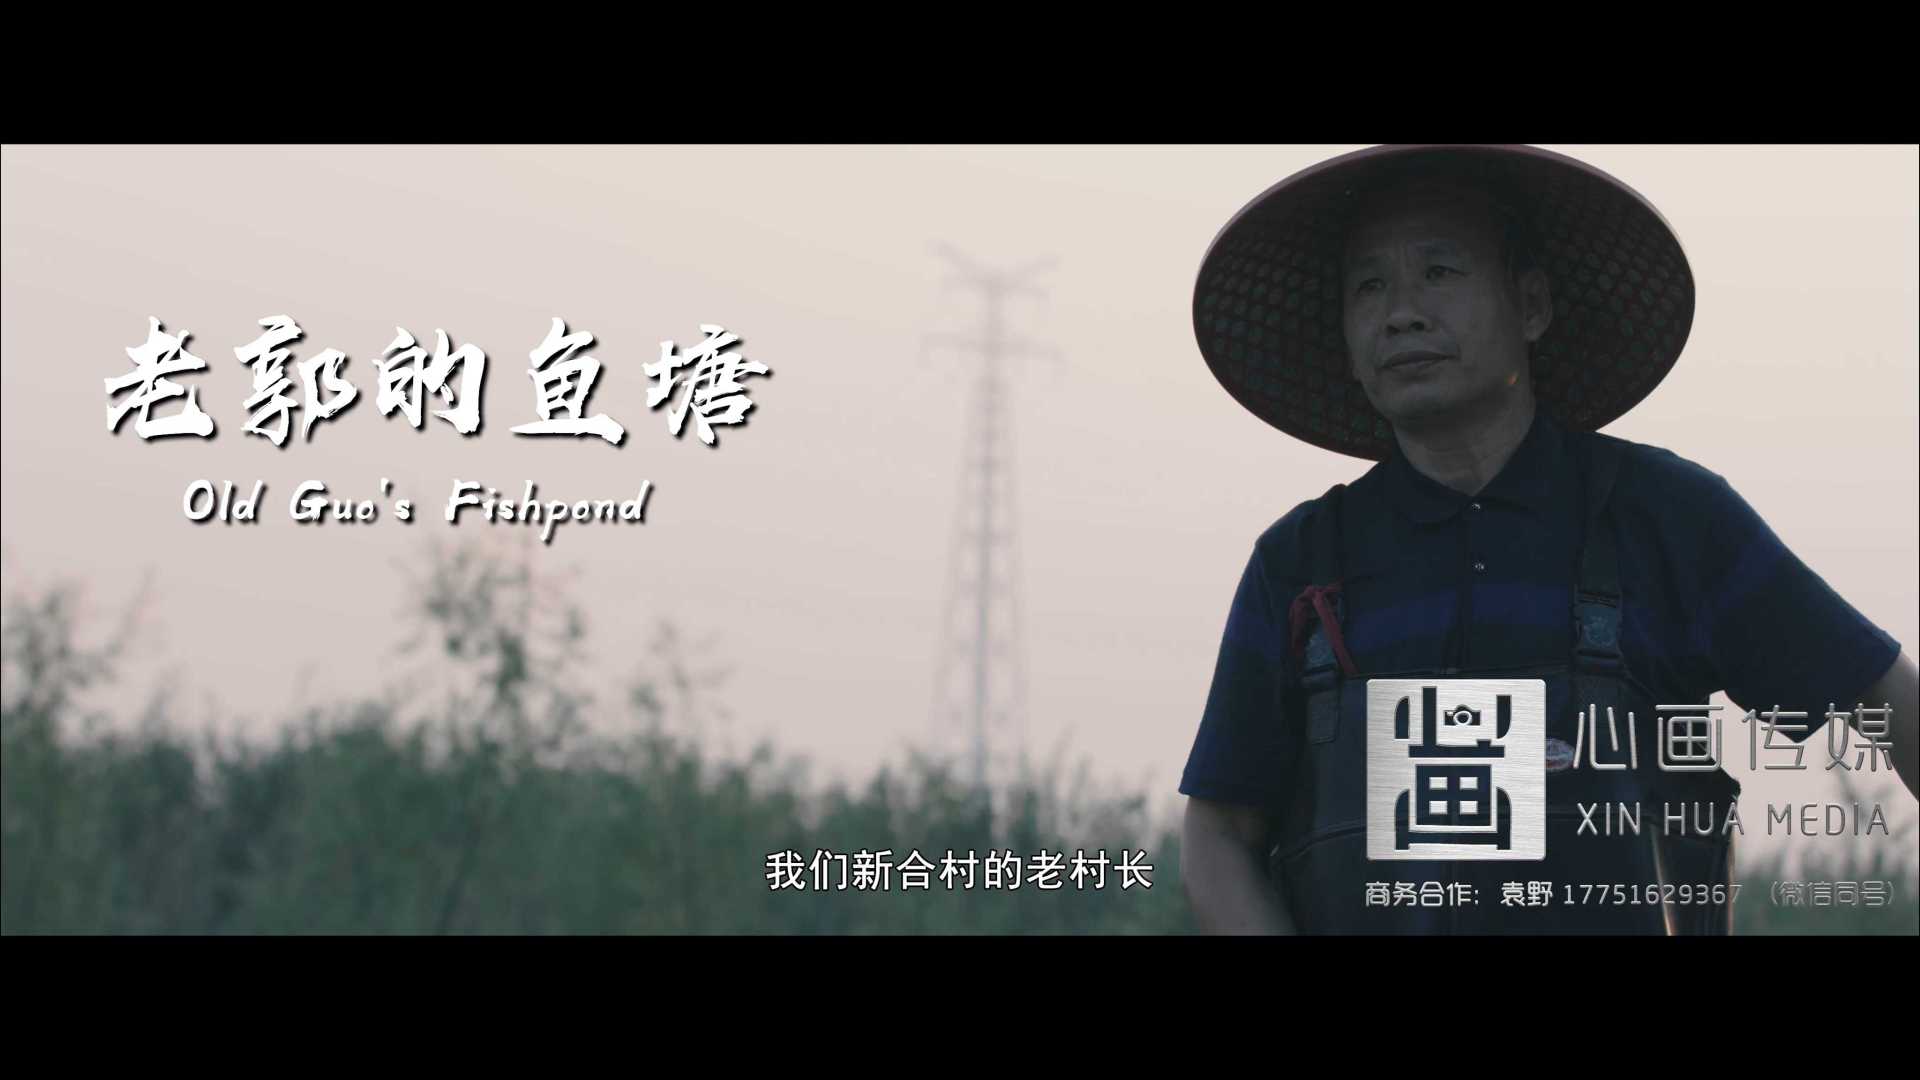 靖江市委组织部微电影《老郭的鱼塘》